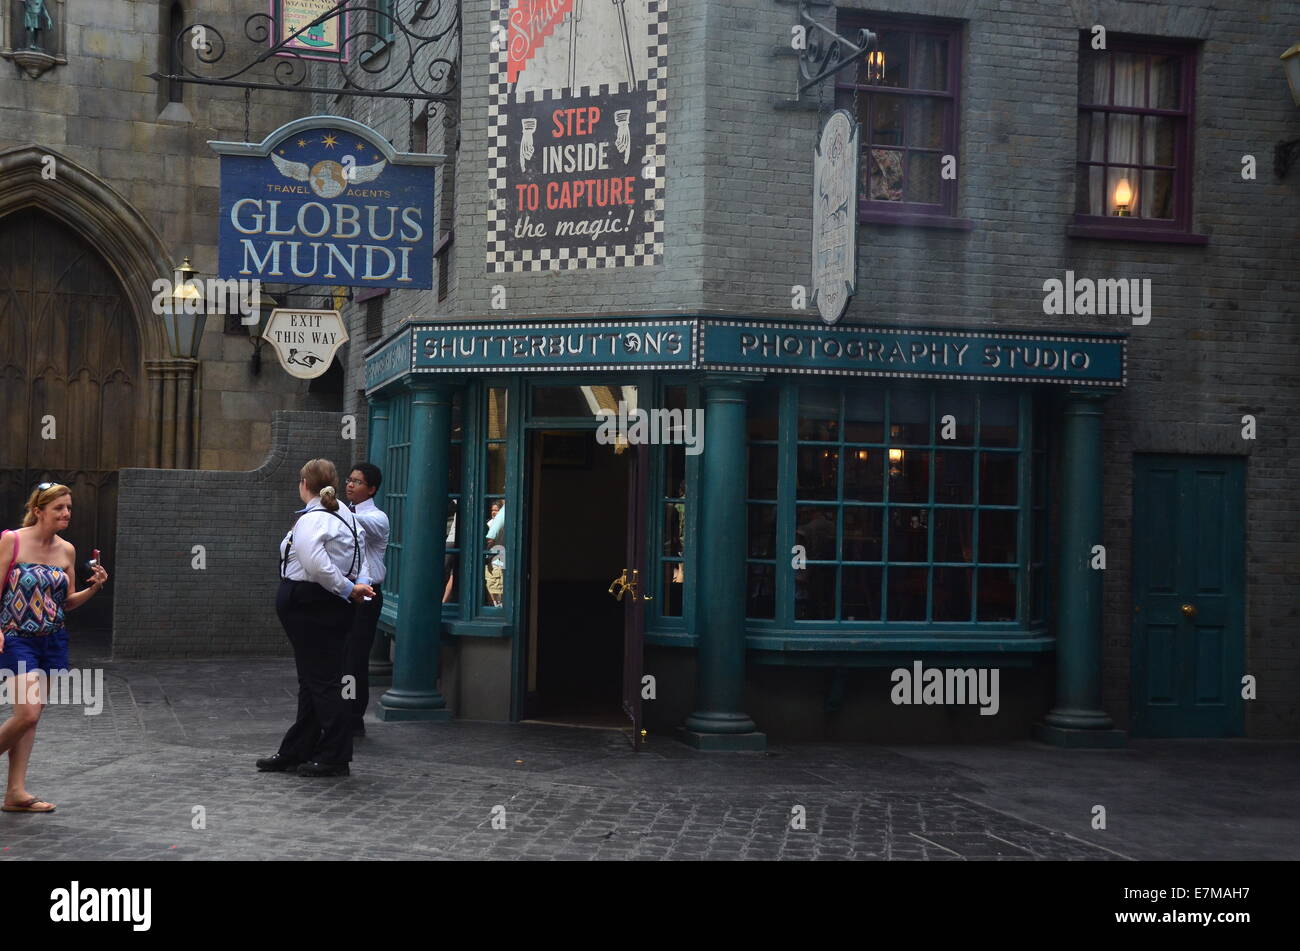 Globus Mundi in der Winkelgasse in die Zauberwelt von Harry Potter  Expansionsleiter Universal Studios in Orlando, Florida, USA Stockfotografie  - Alamy